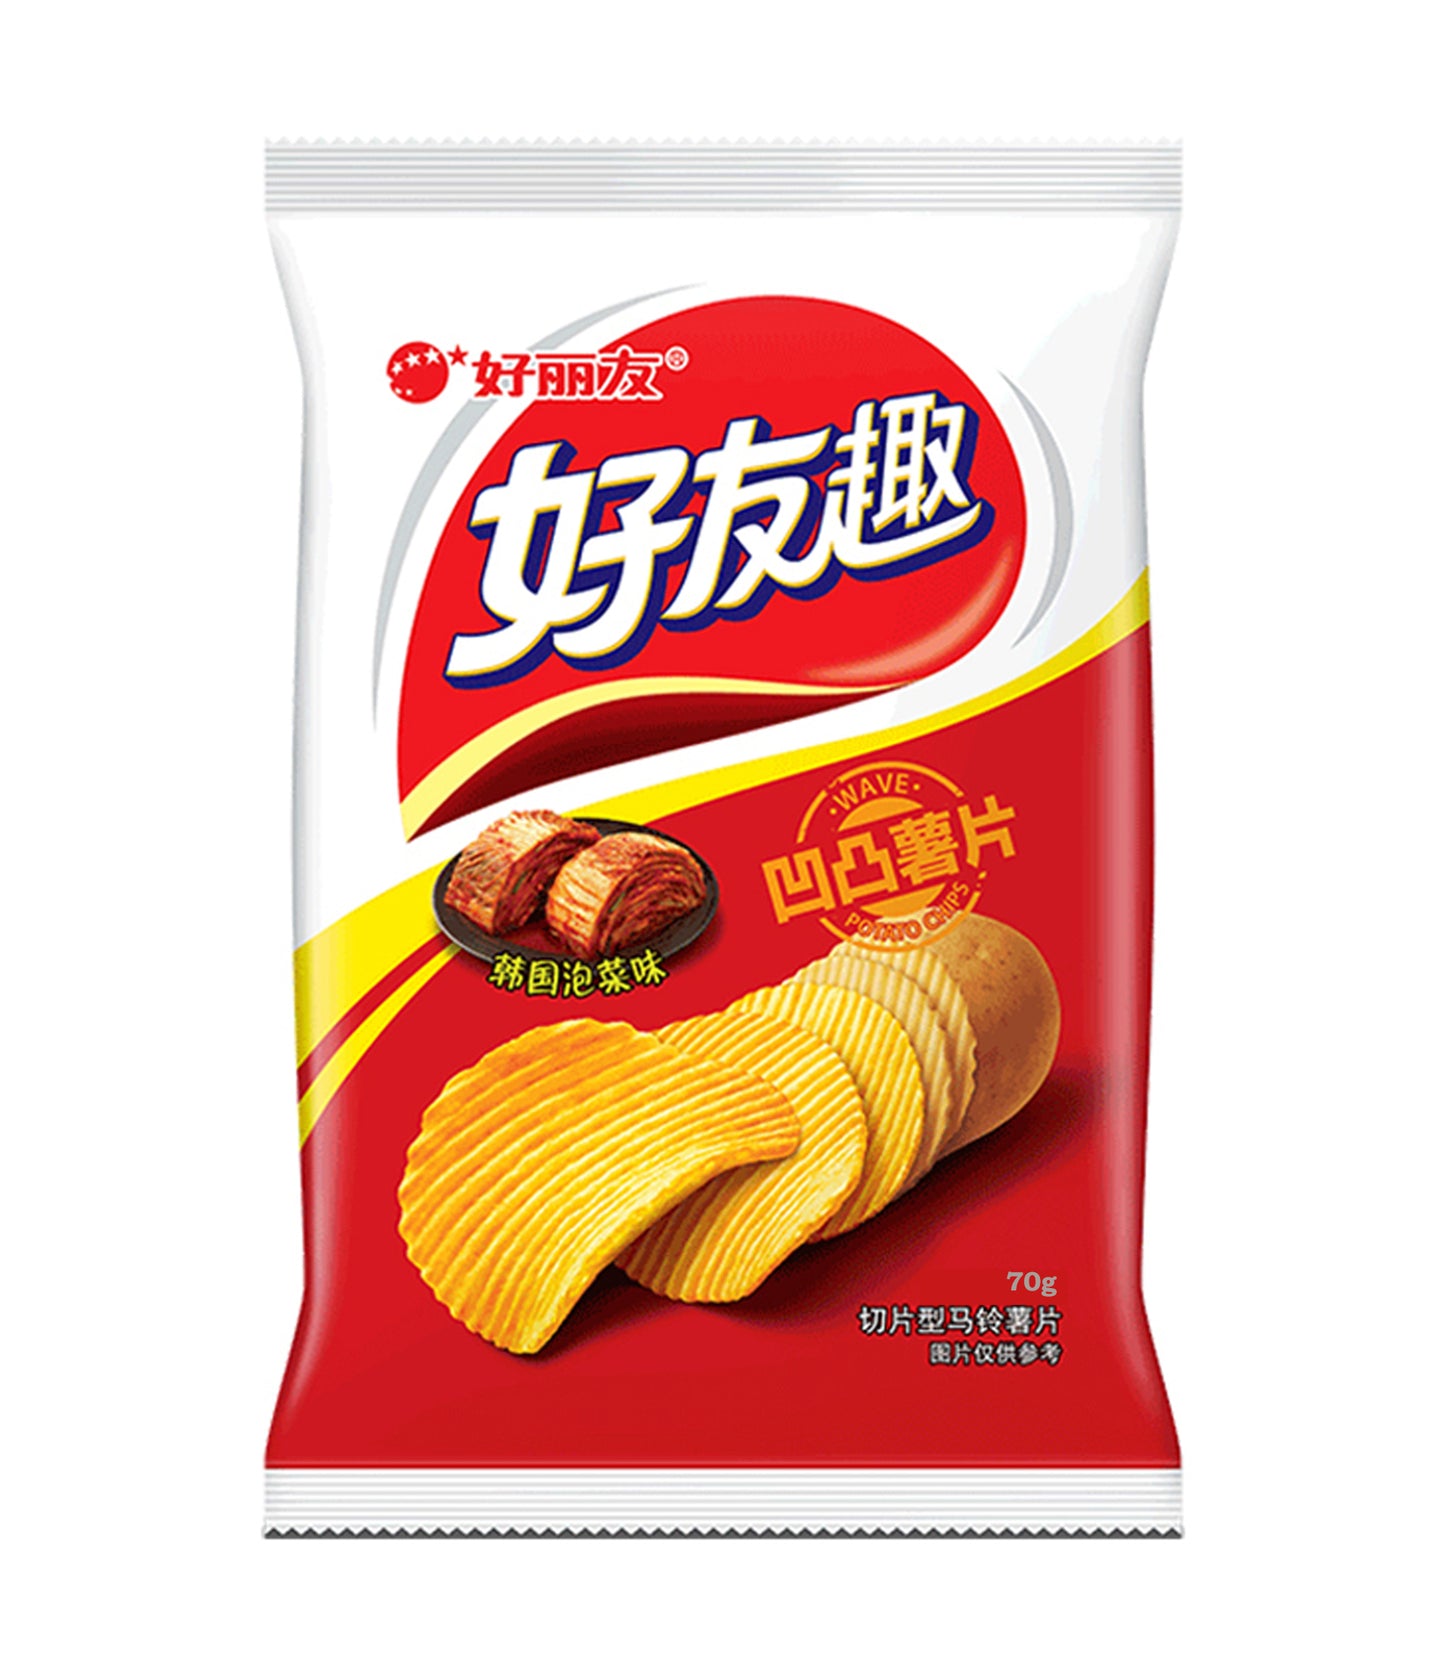 Orion - Potato Chips (Kimchi Flavor) 83g